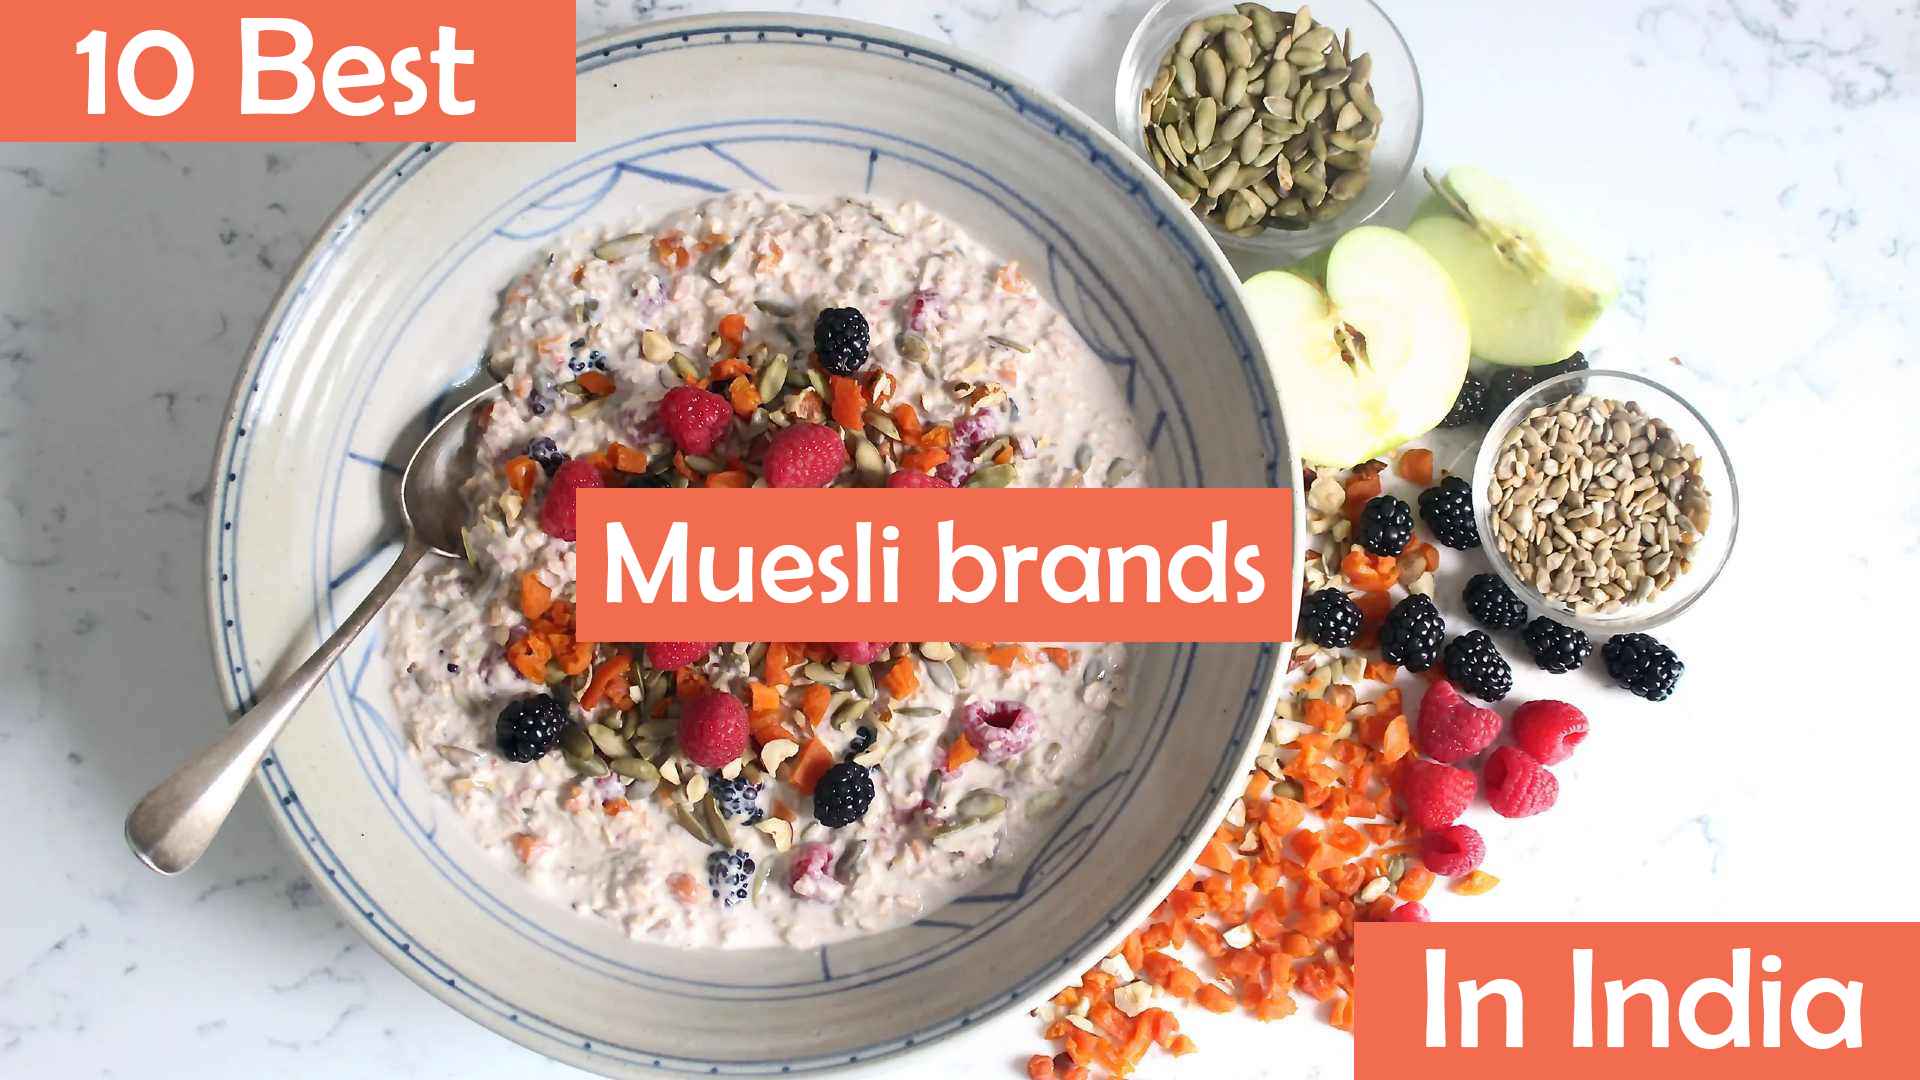 10 best muesli brands in India